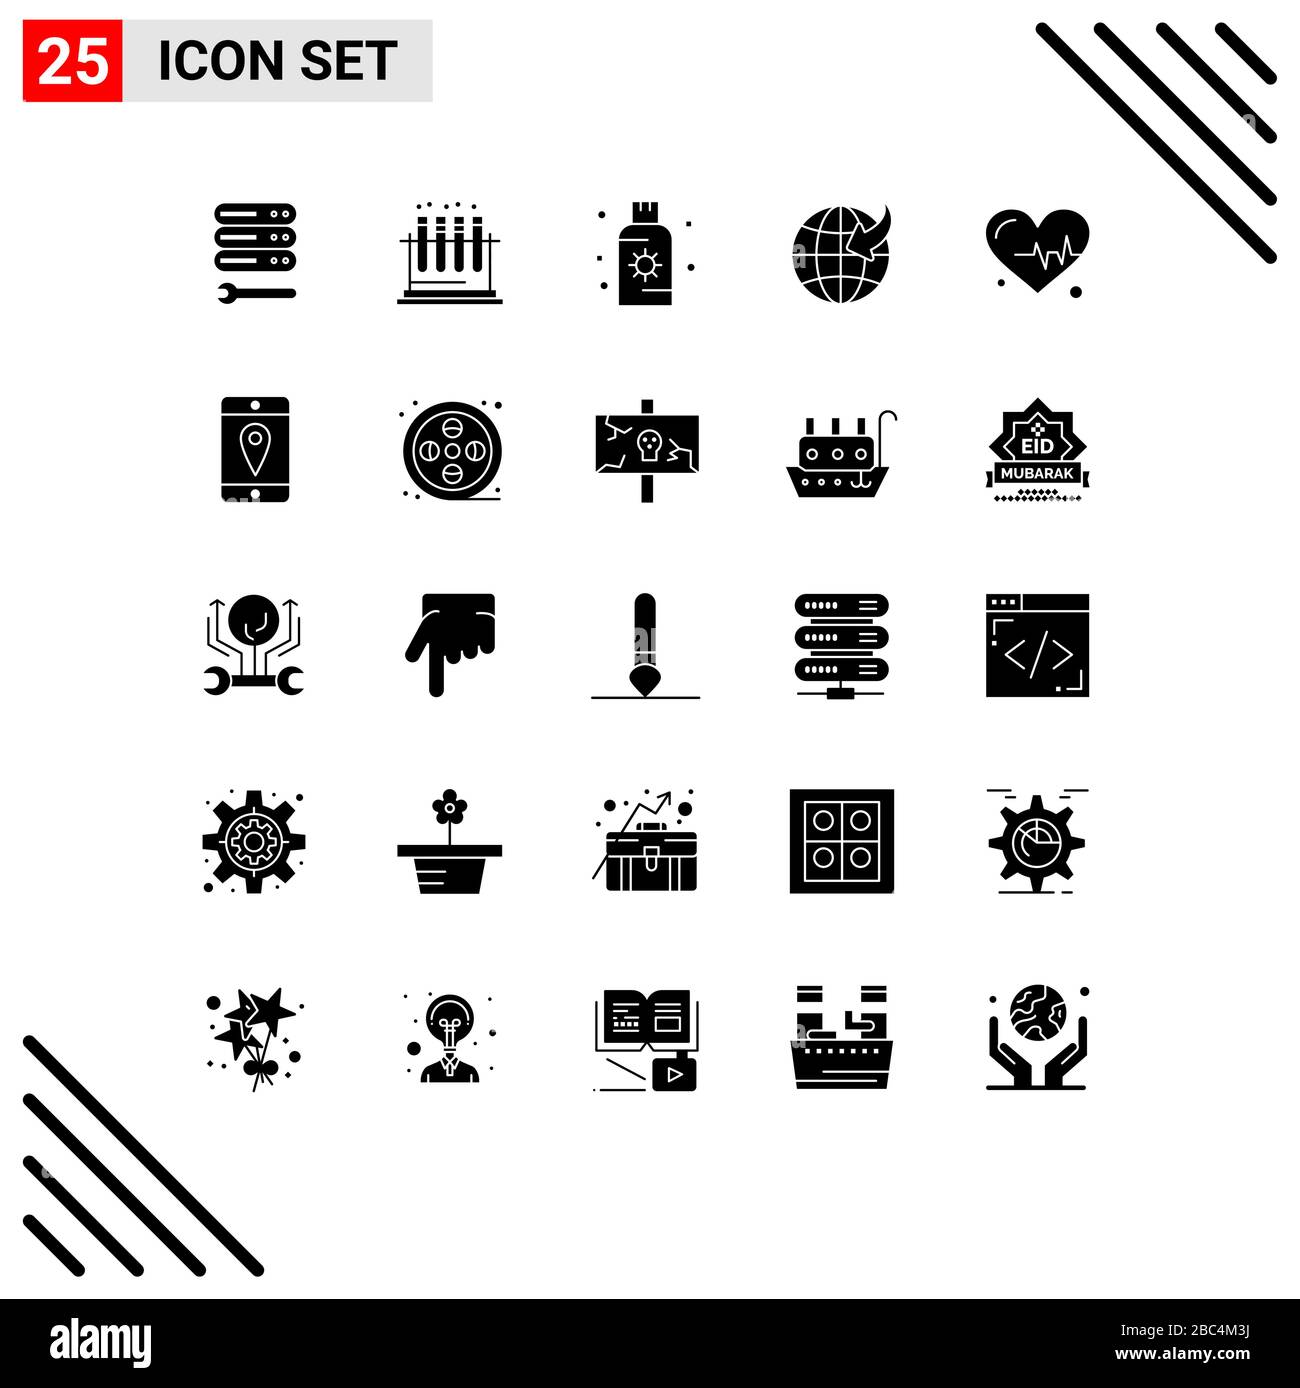 Jeu de 25 icônes d'interface utilisateur modernes symboles signes pour battre, Voyage, lotion, globe, Sunblock Editable Vector Design Elements Illustration de Vecteur